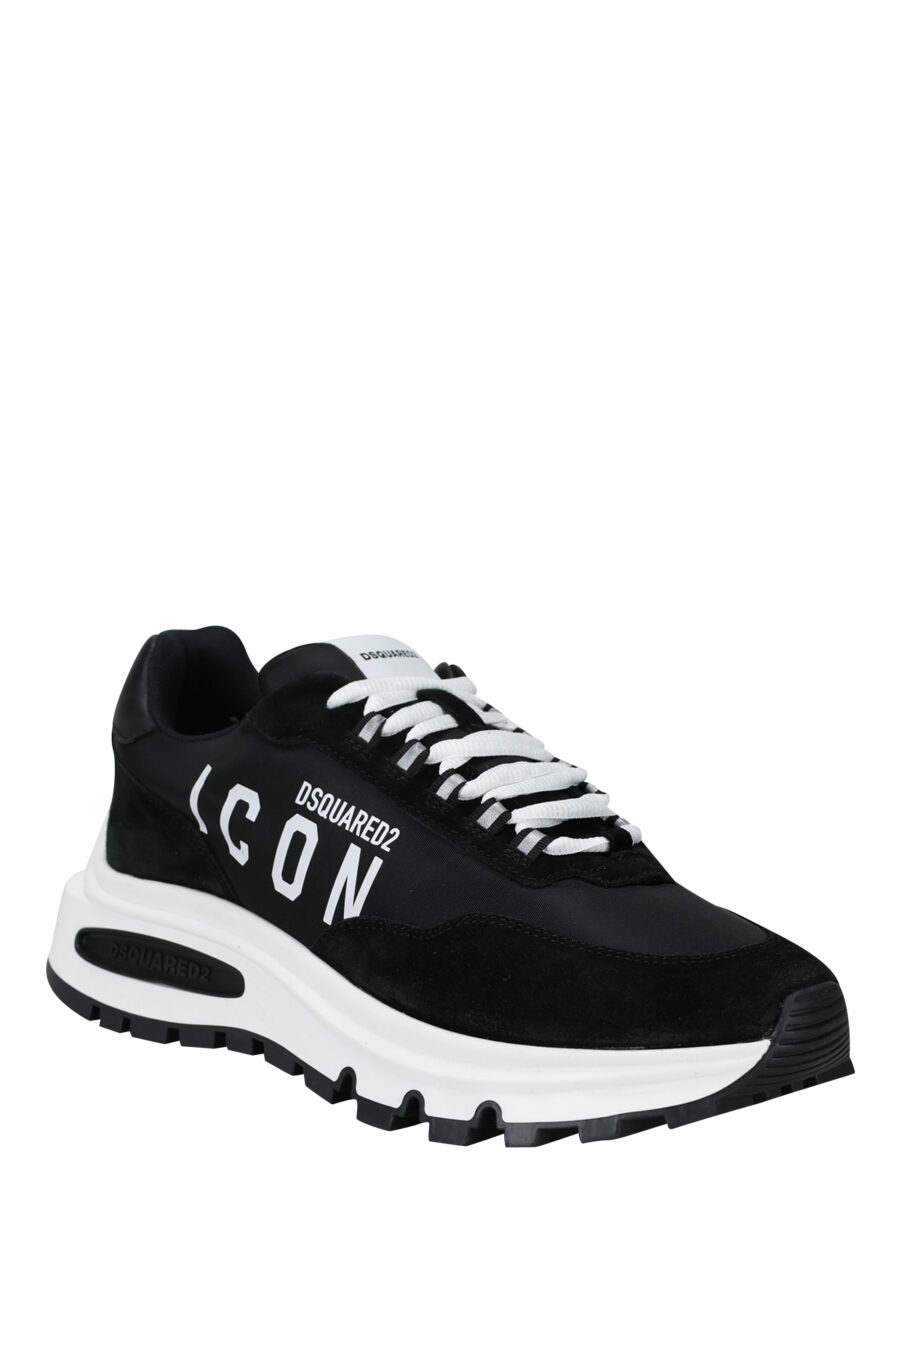 Zapatillas negras con minilogo "icon" y suela blanca con cámara de aire - 8055777249321 1